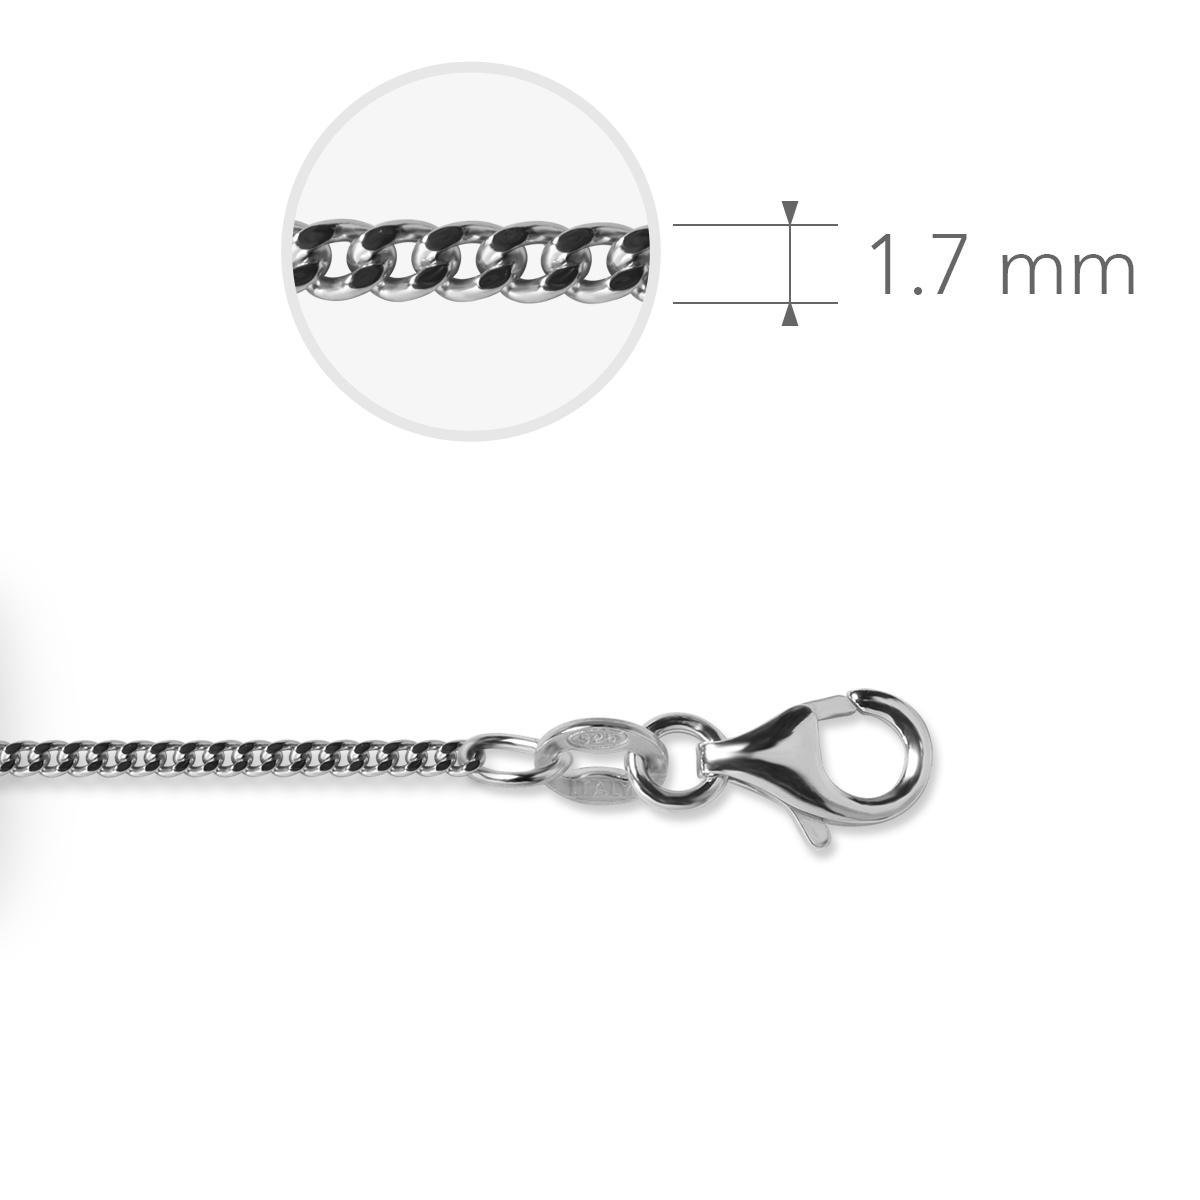 Jewels Inc. - Gourmet Ketting met Karabijnsluiting - 1.7mm Dik - Lengte 60cm - Gerhodineerd Zilver 925